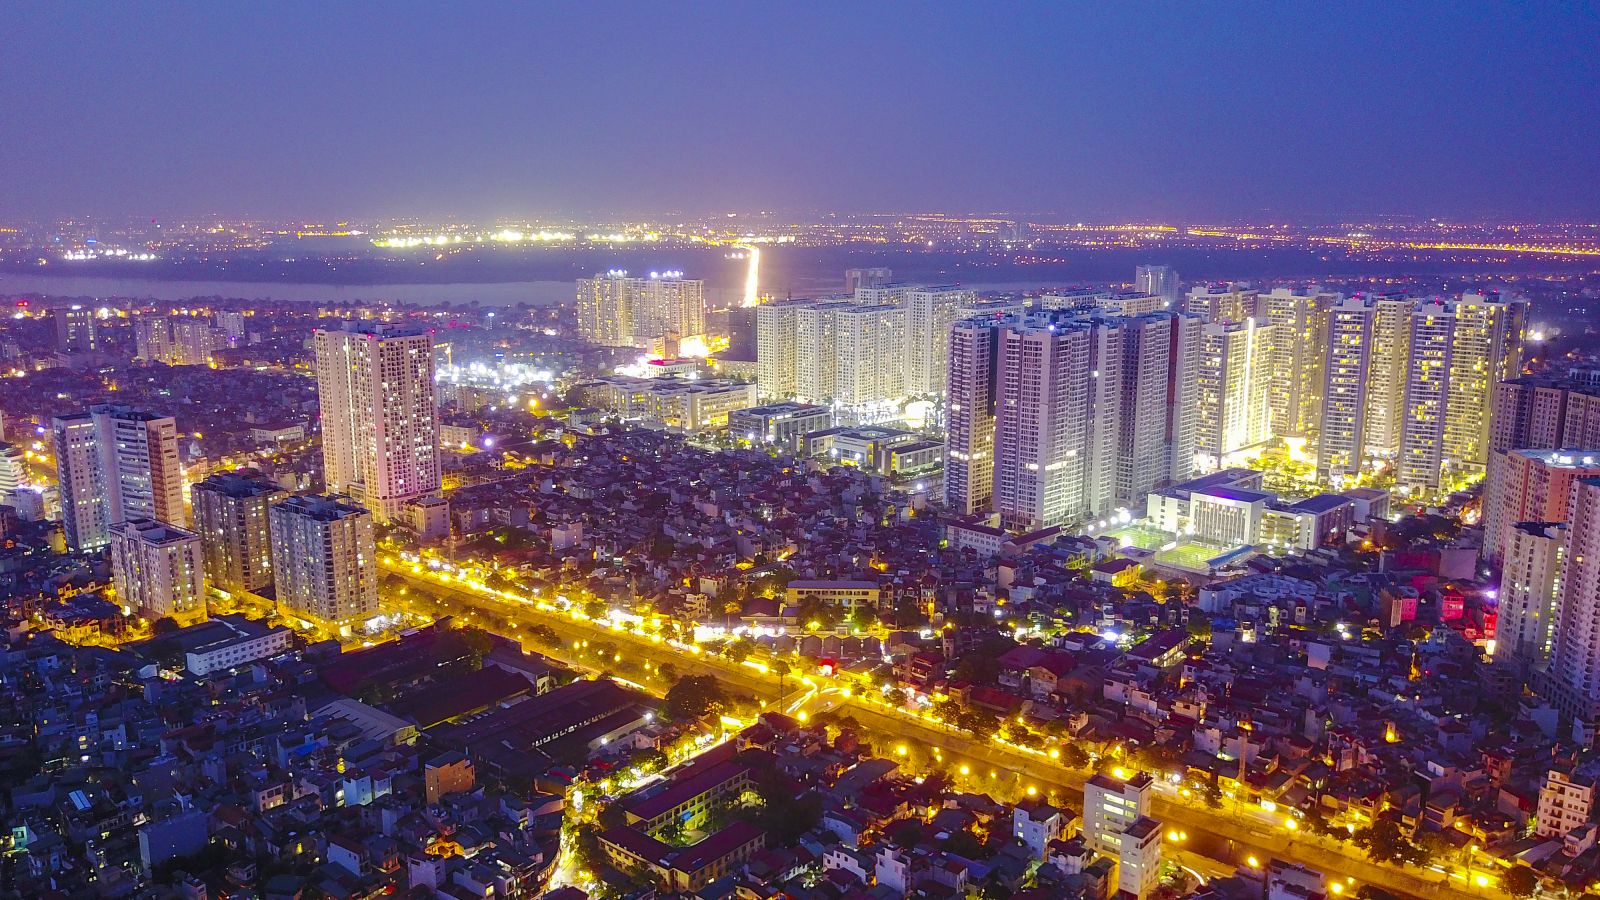 Nhịp sống năng động khiến các khu đô thị mới mọc lên ngày càng nhiều ở Hà Nội. Trên hình là khu đô thị Time City